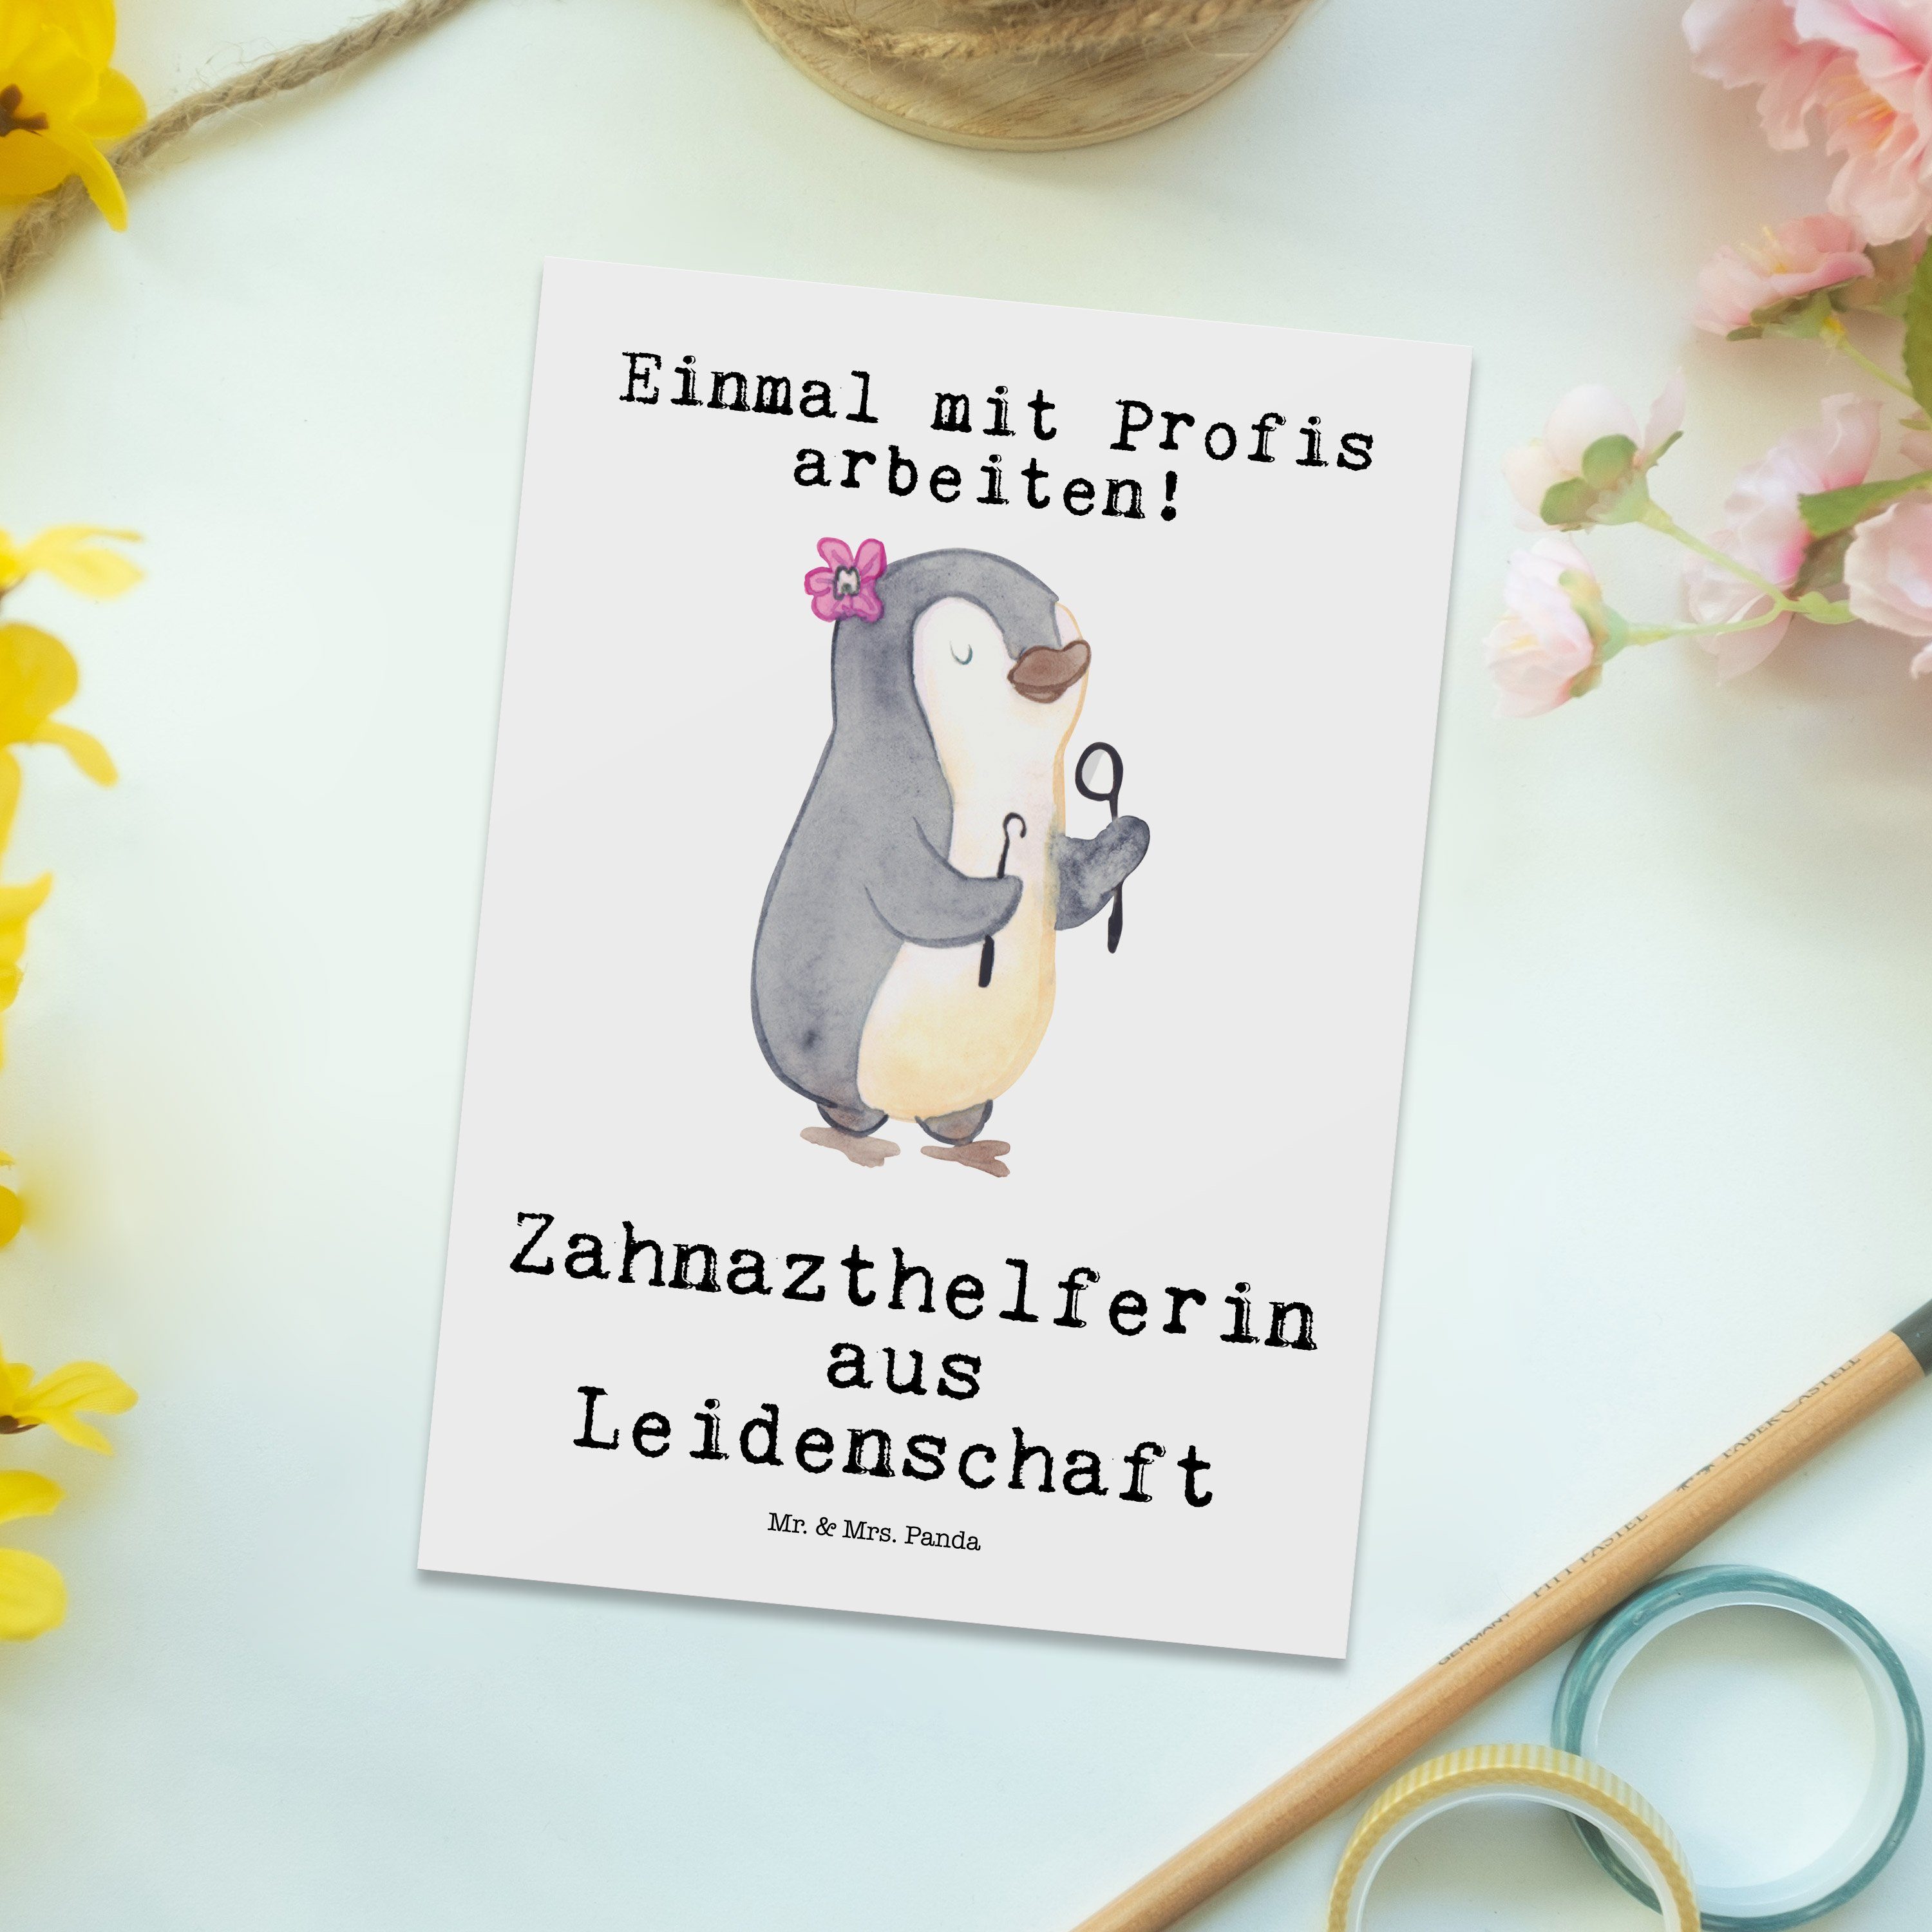 Mr. & Mrs. Panda Geschenk, Weiß Zahnarzthelferin - Leidenschaft Postkarte Abschied, Einlad - aus